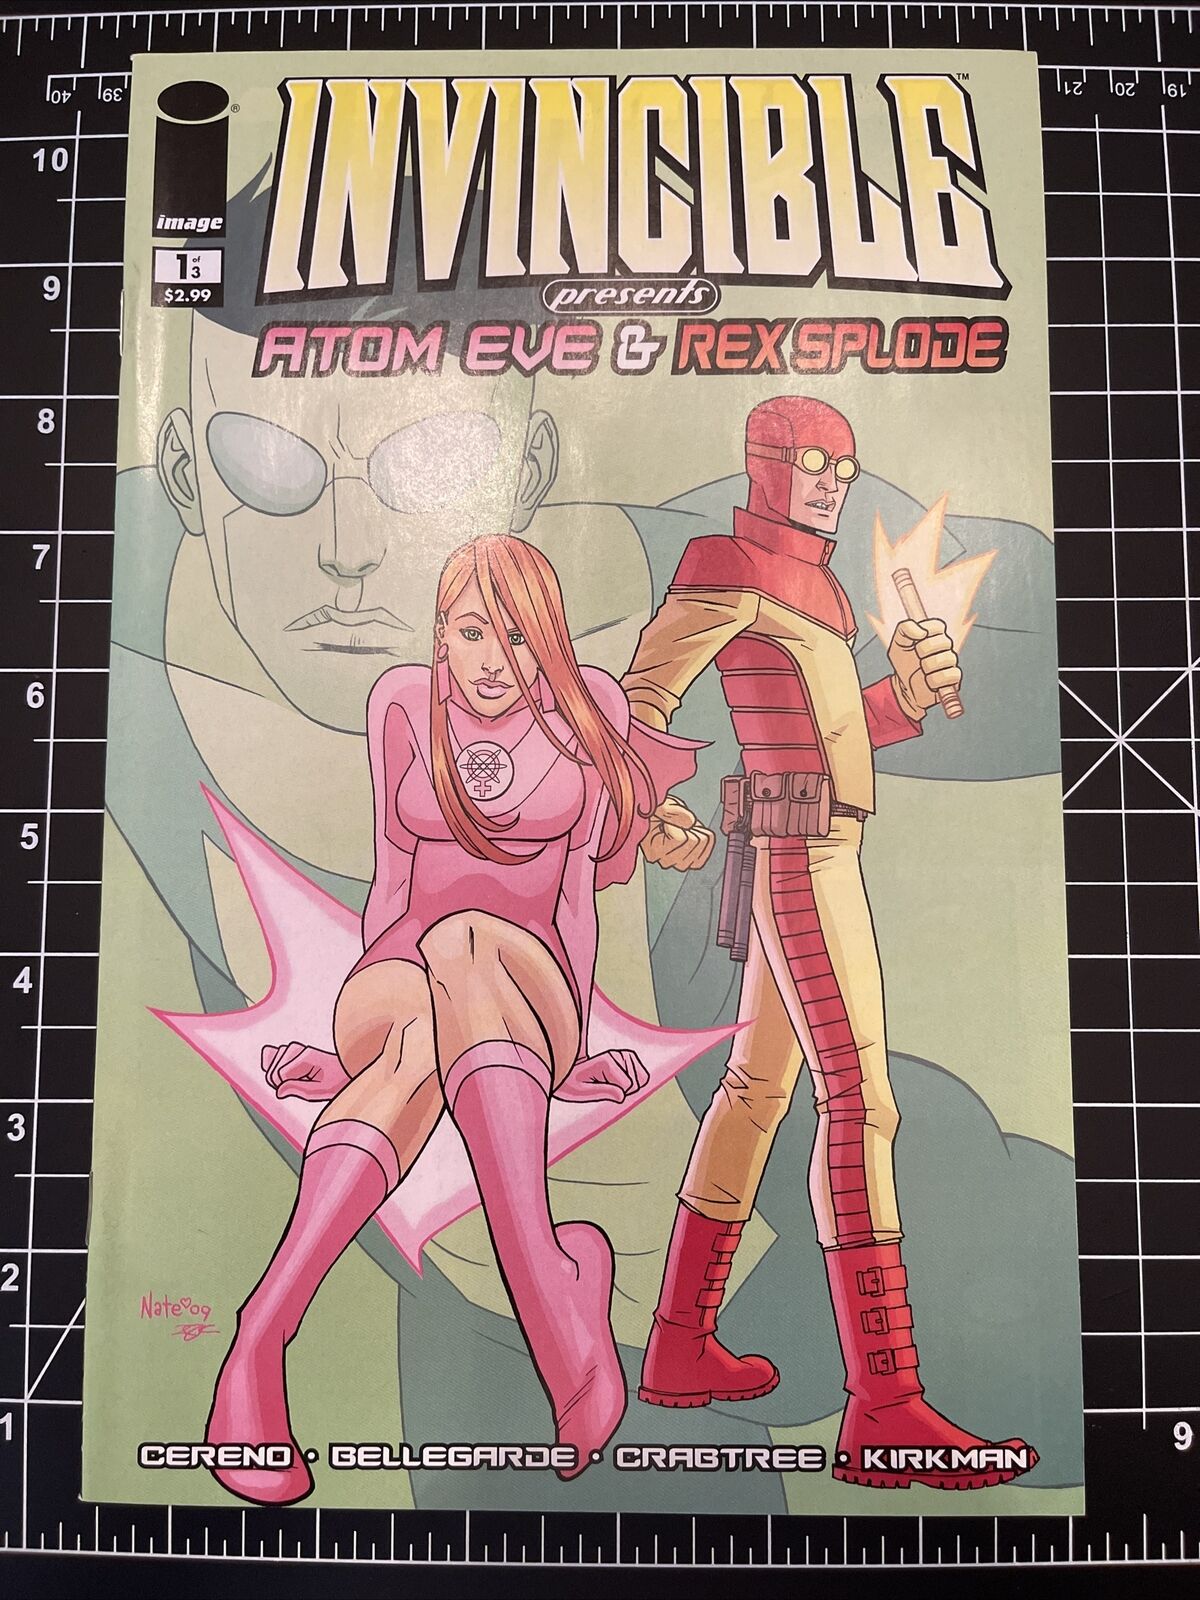 Invincible Presents: Atom Eve & Rex Spolde #1 NM (Image Comics 2009)